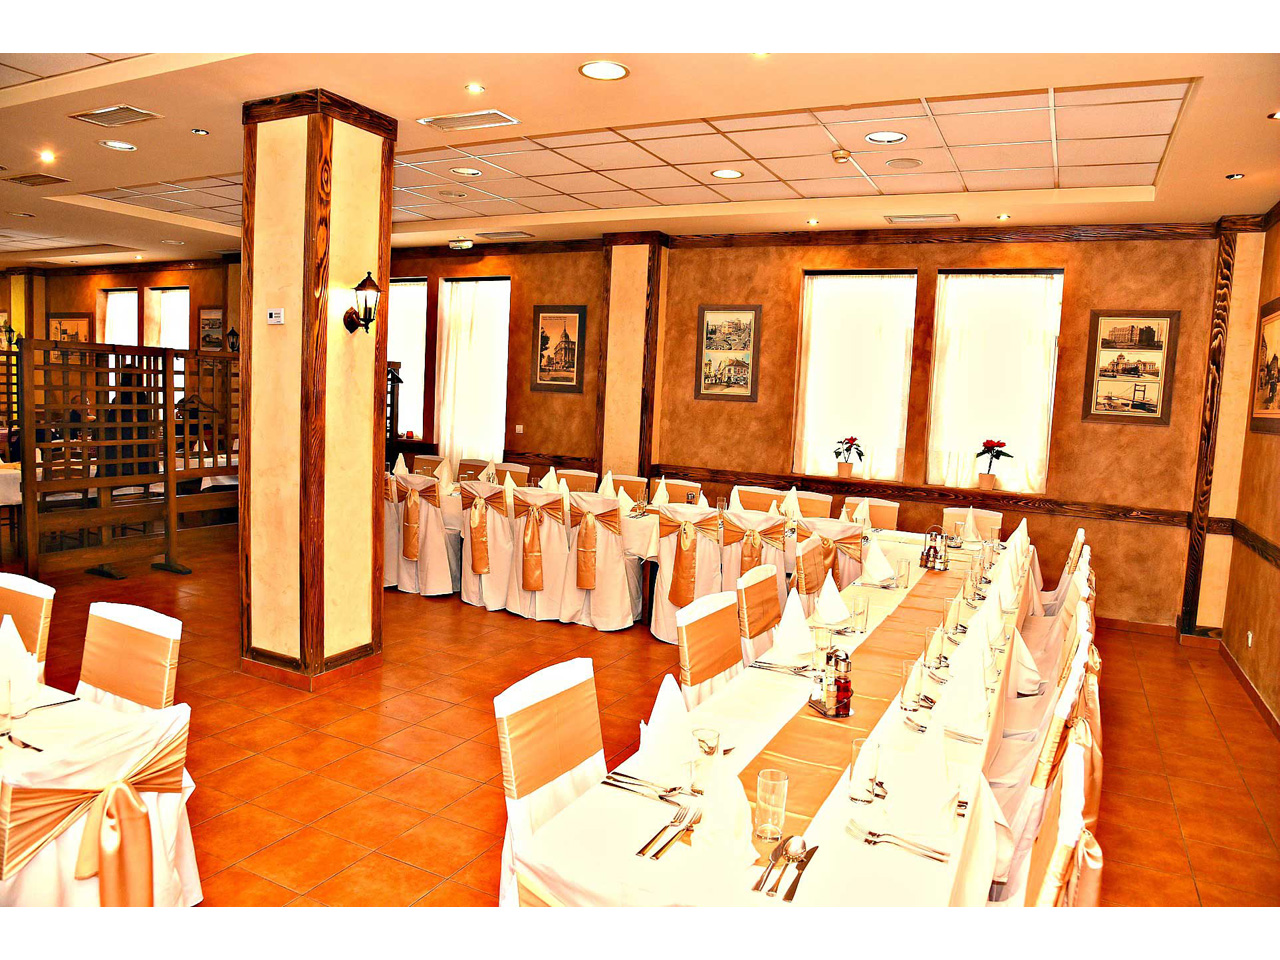 DREN RESTAURANT Restaurants for weddings, celebrations Belgrade - Photo 6